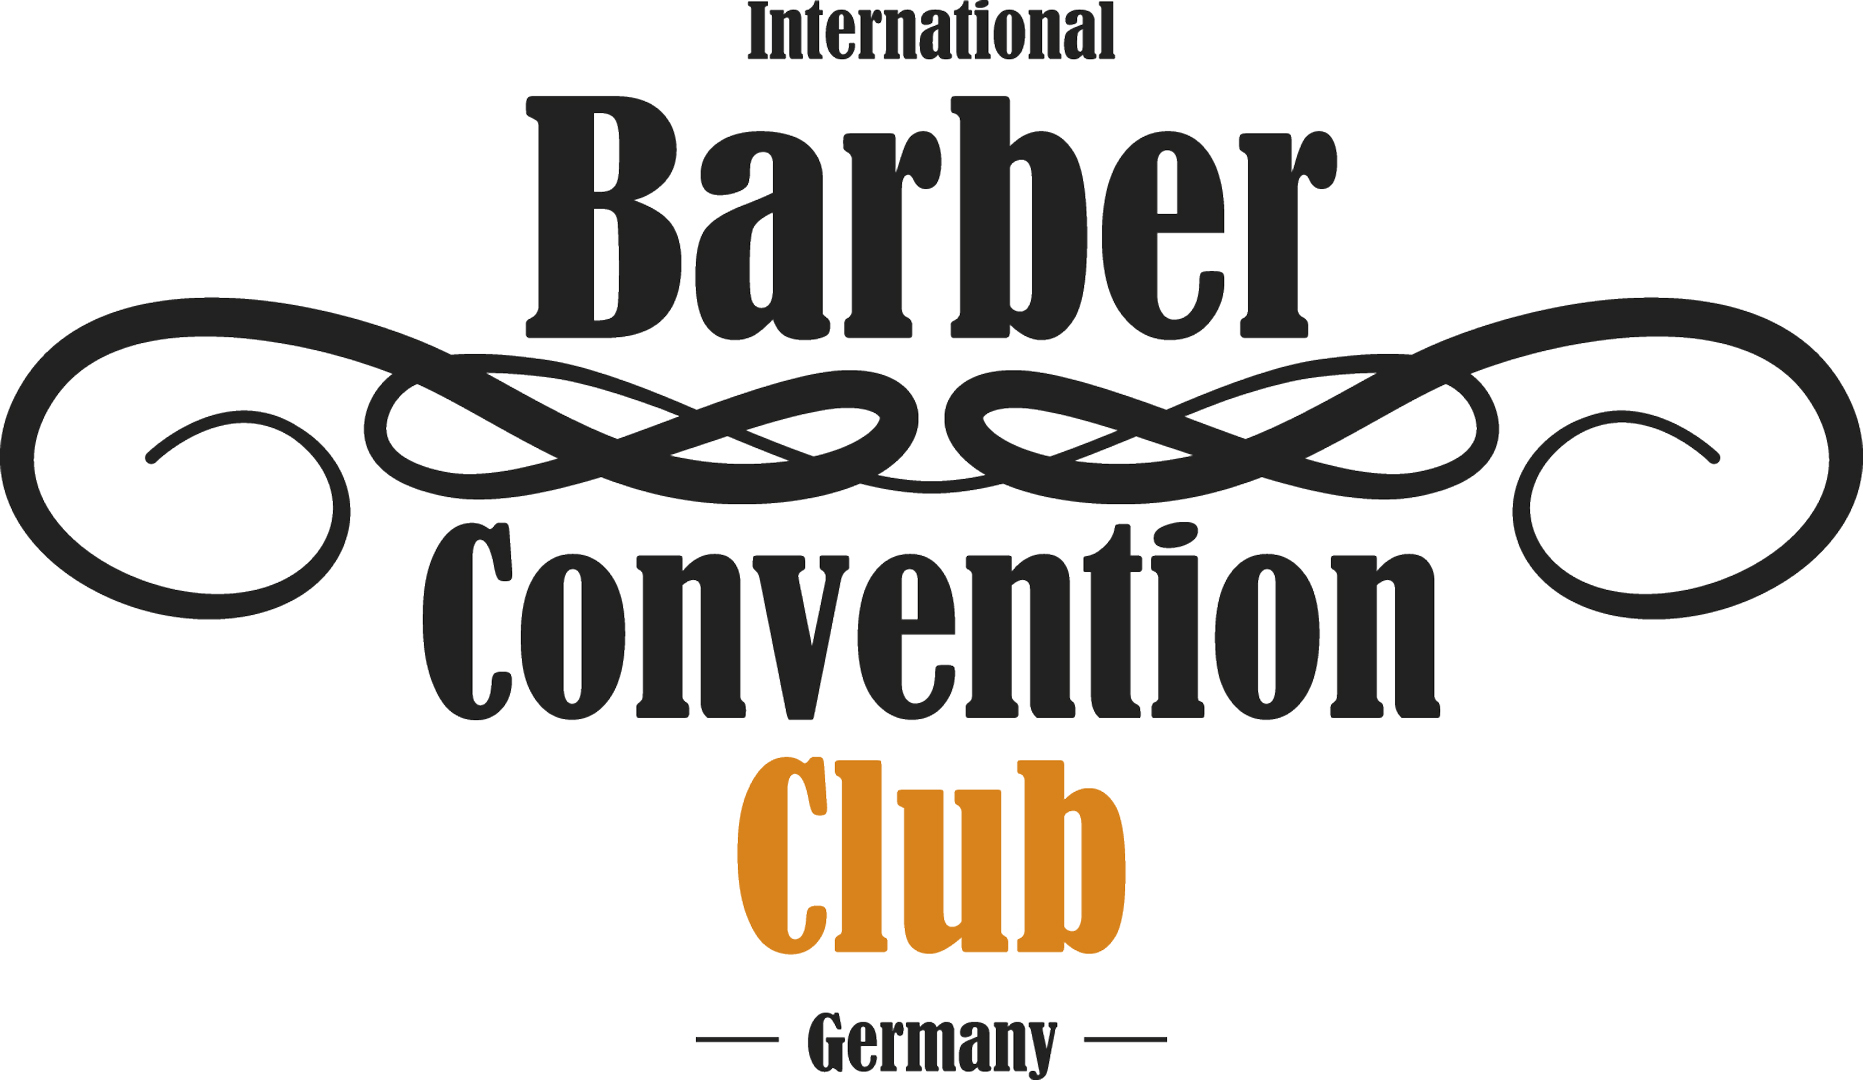 International-Barber-Convention-Club-feiert-Kick-Off-1